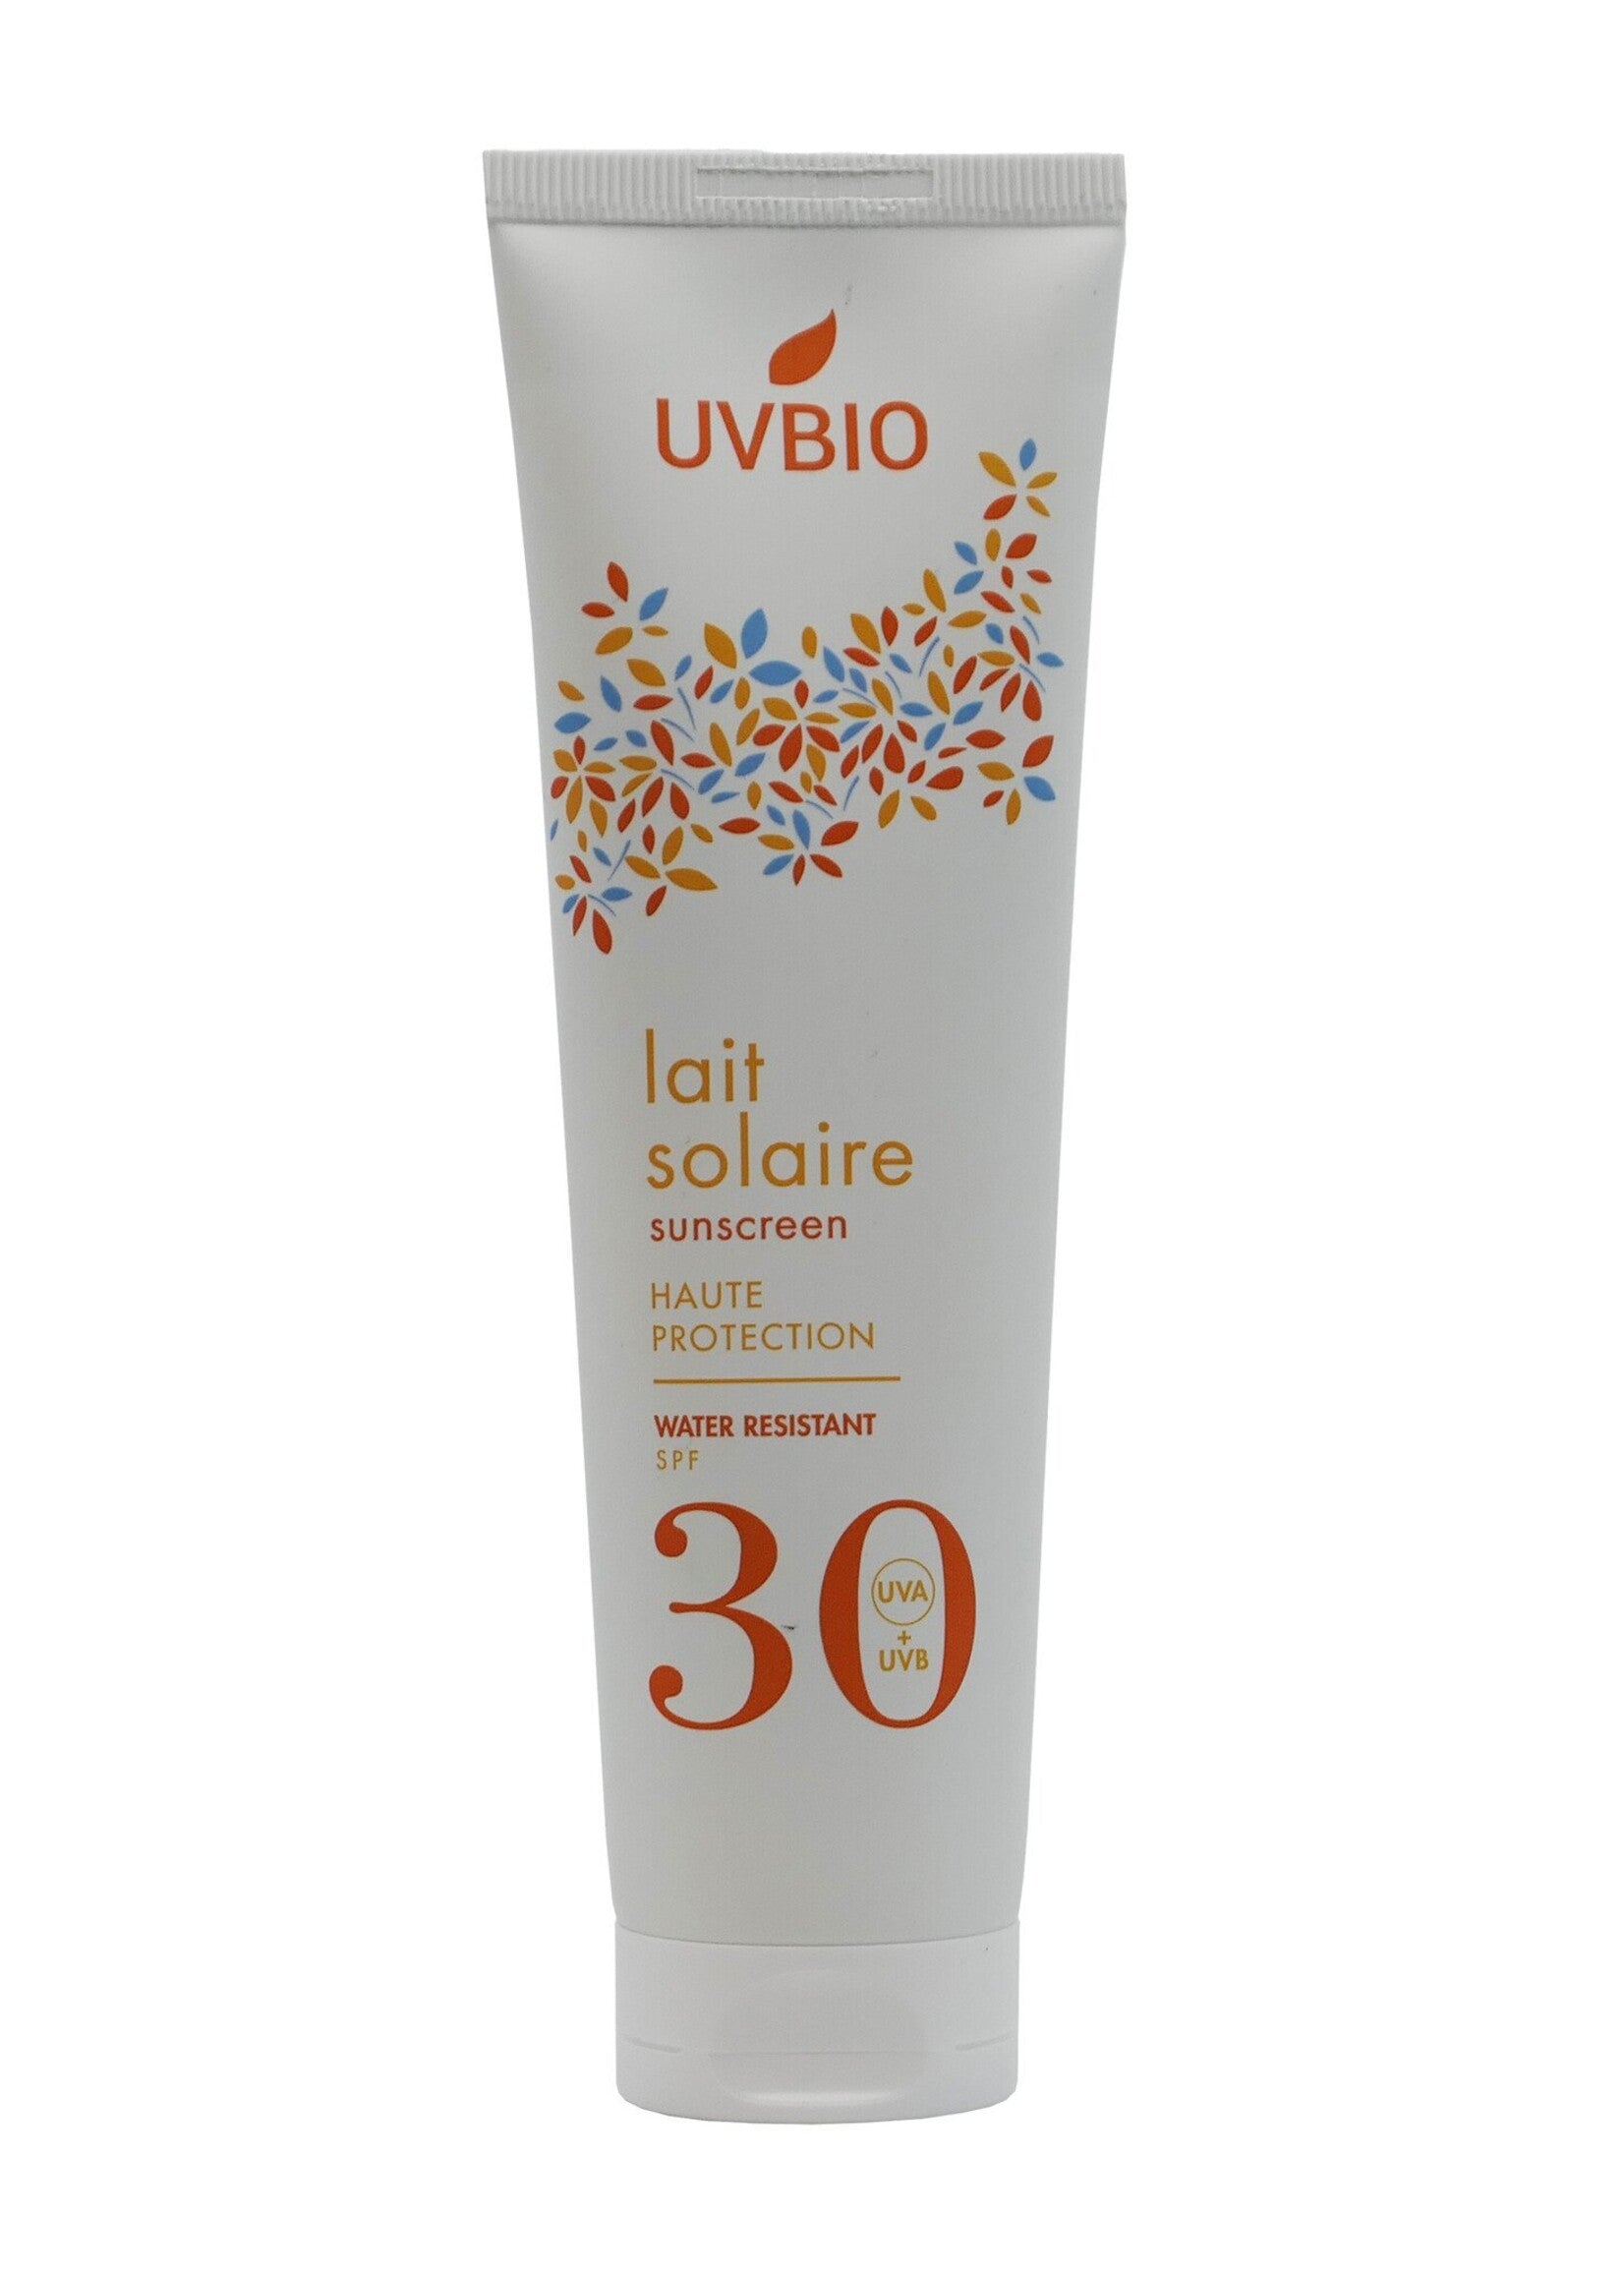 UVBIO Zonnemelk SPF 30 met wortel-, kokos- en karanjaolie-extracten biedt een hoge natuurlijke bescherming tegen UVA- en UVB-stralen. 